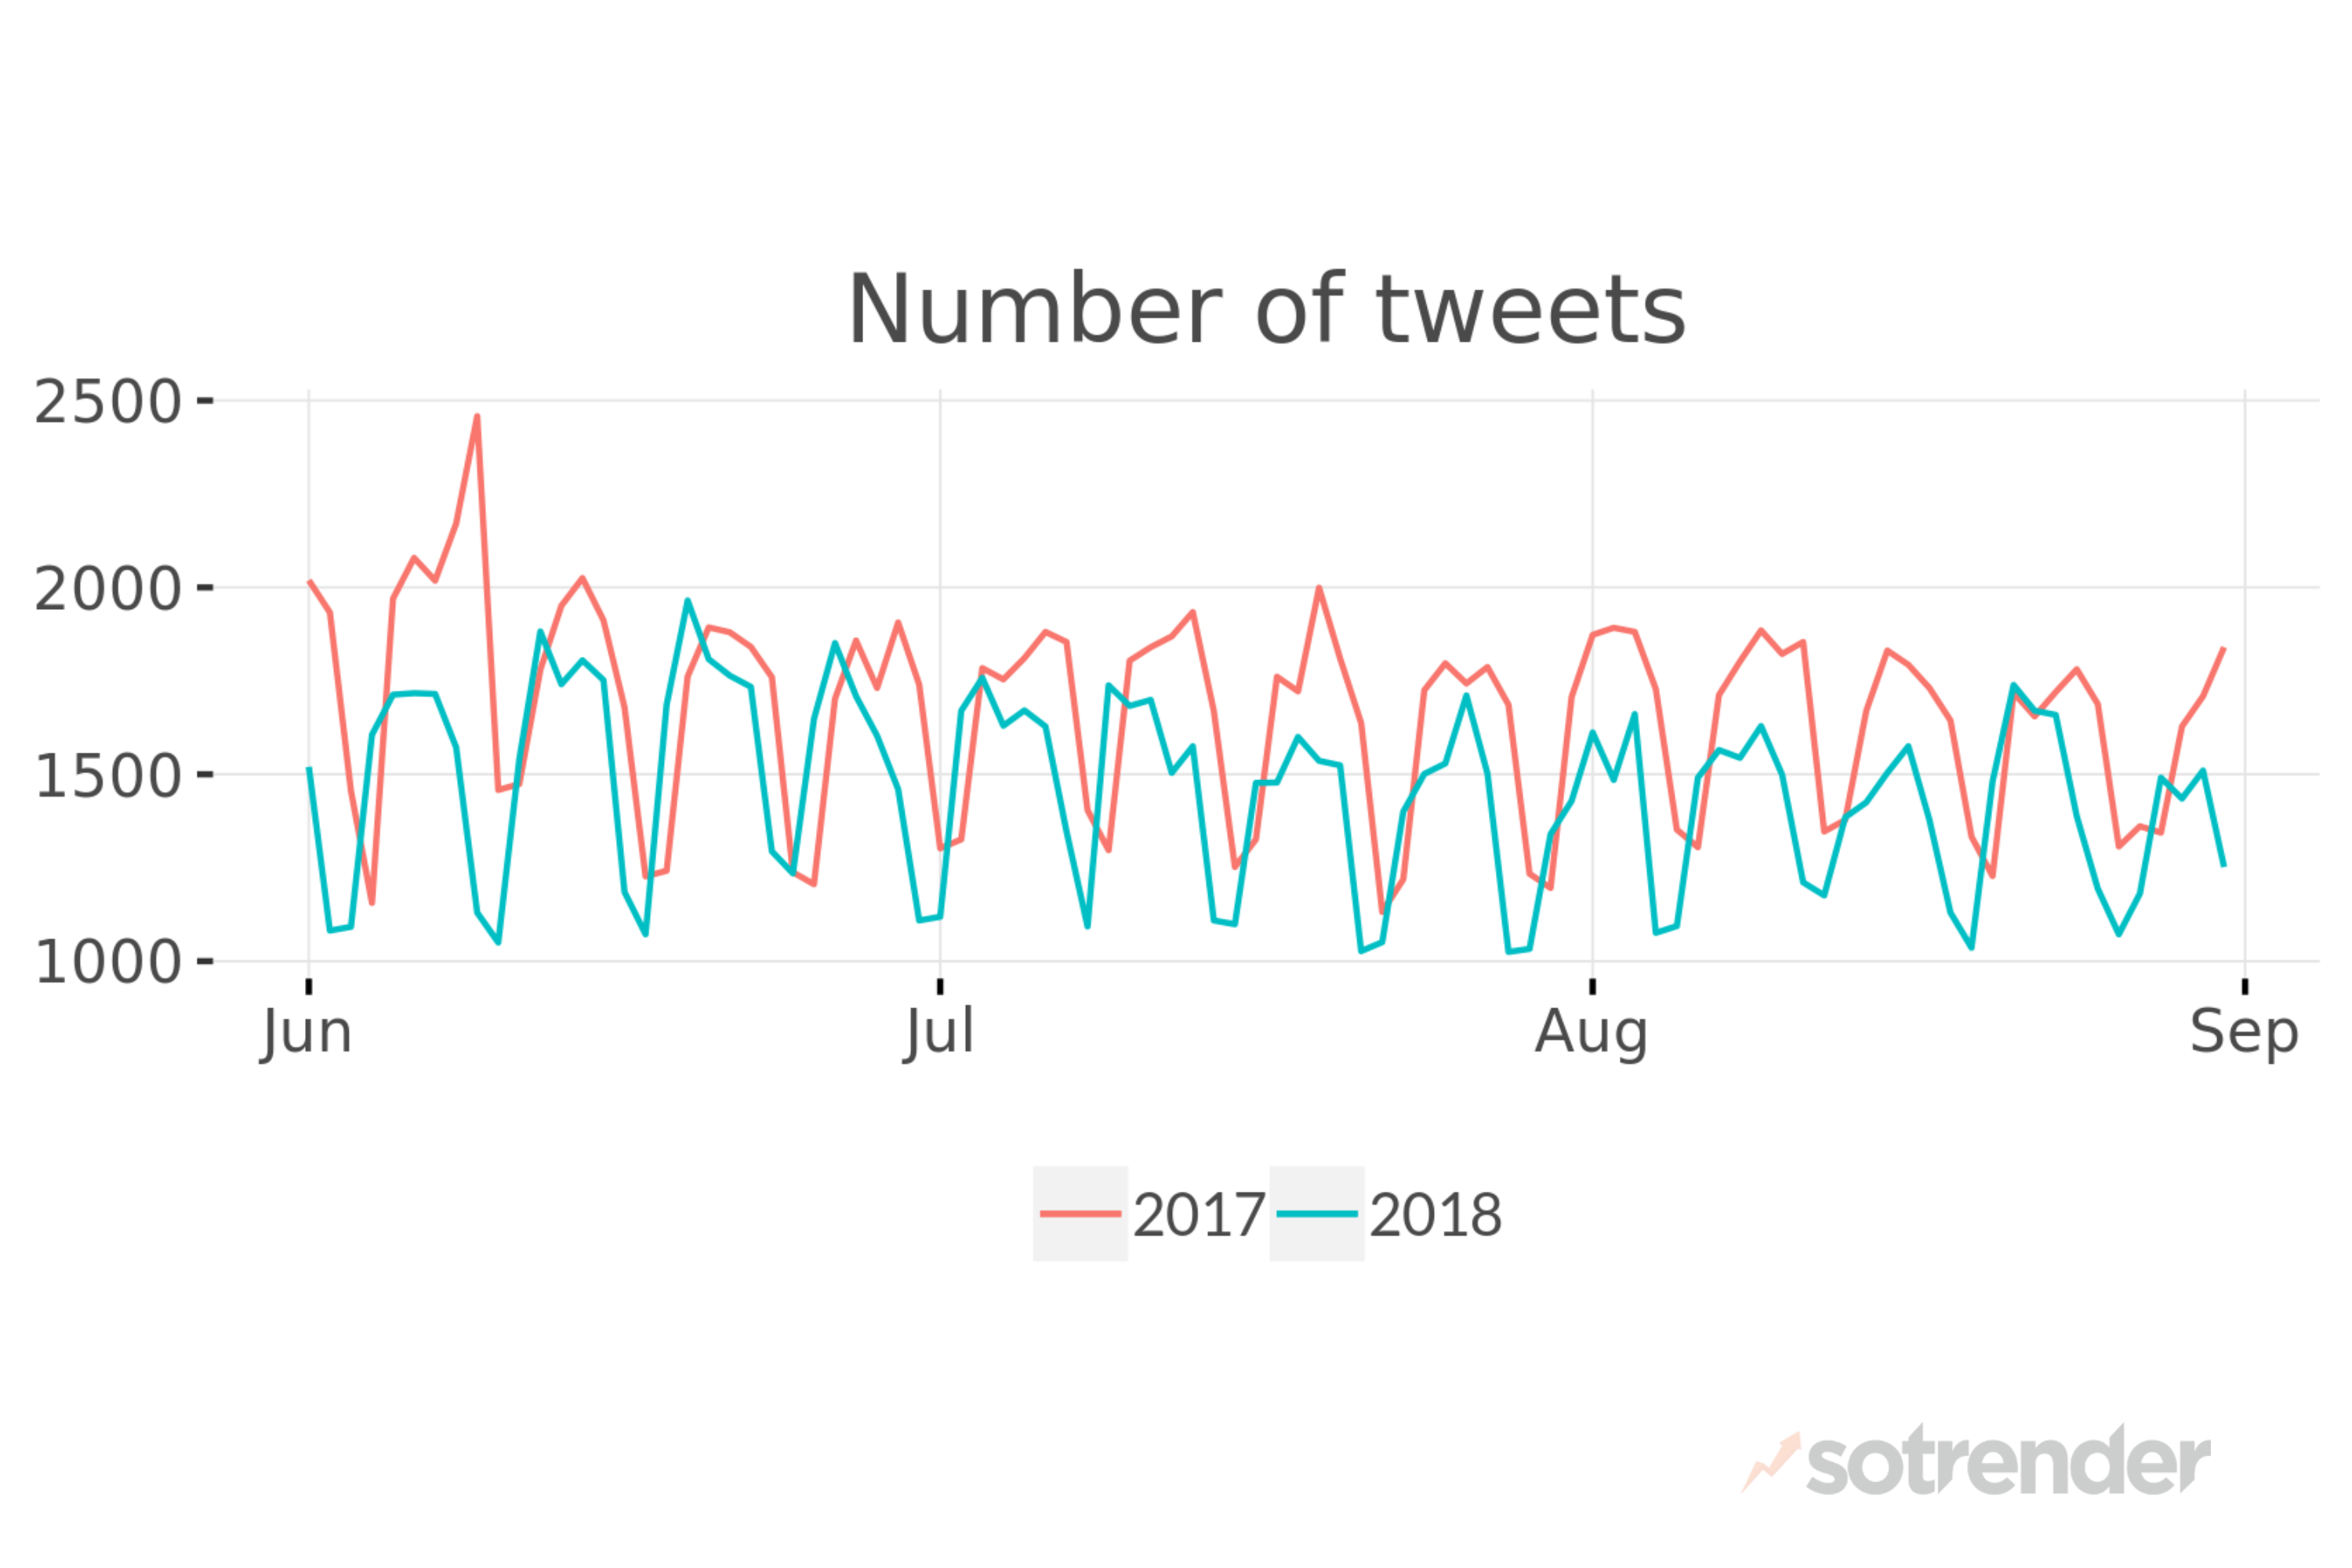 Number of tweets 2017 vs 2018